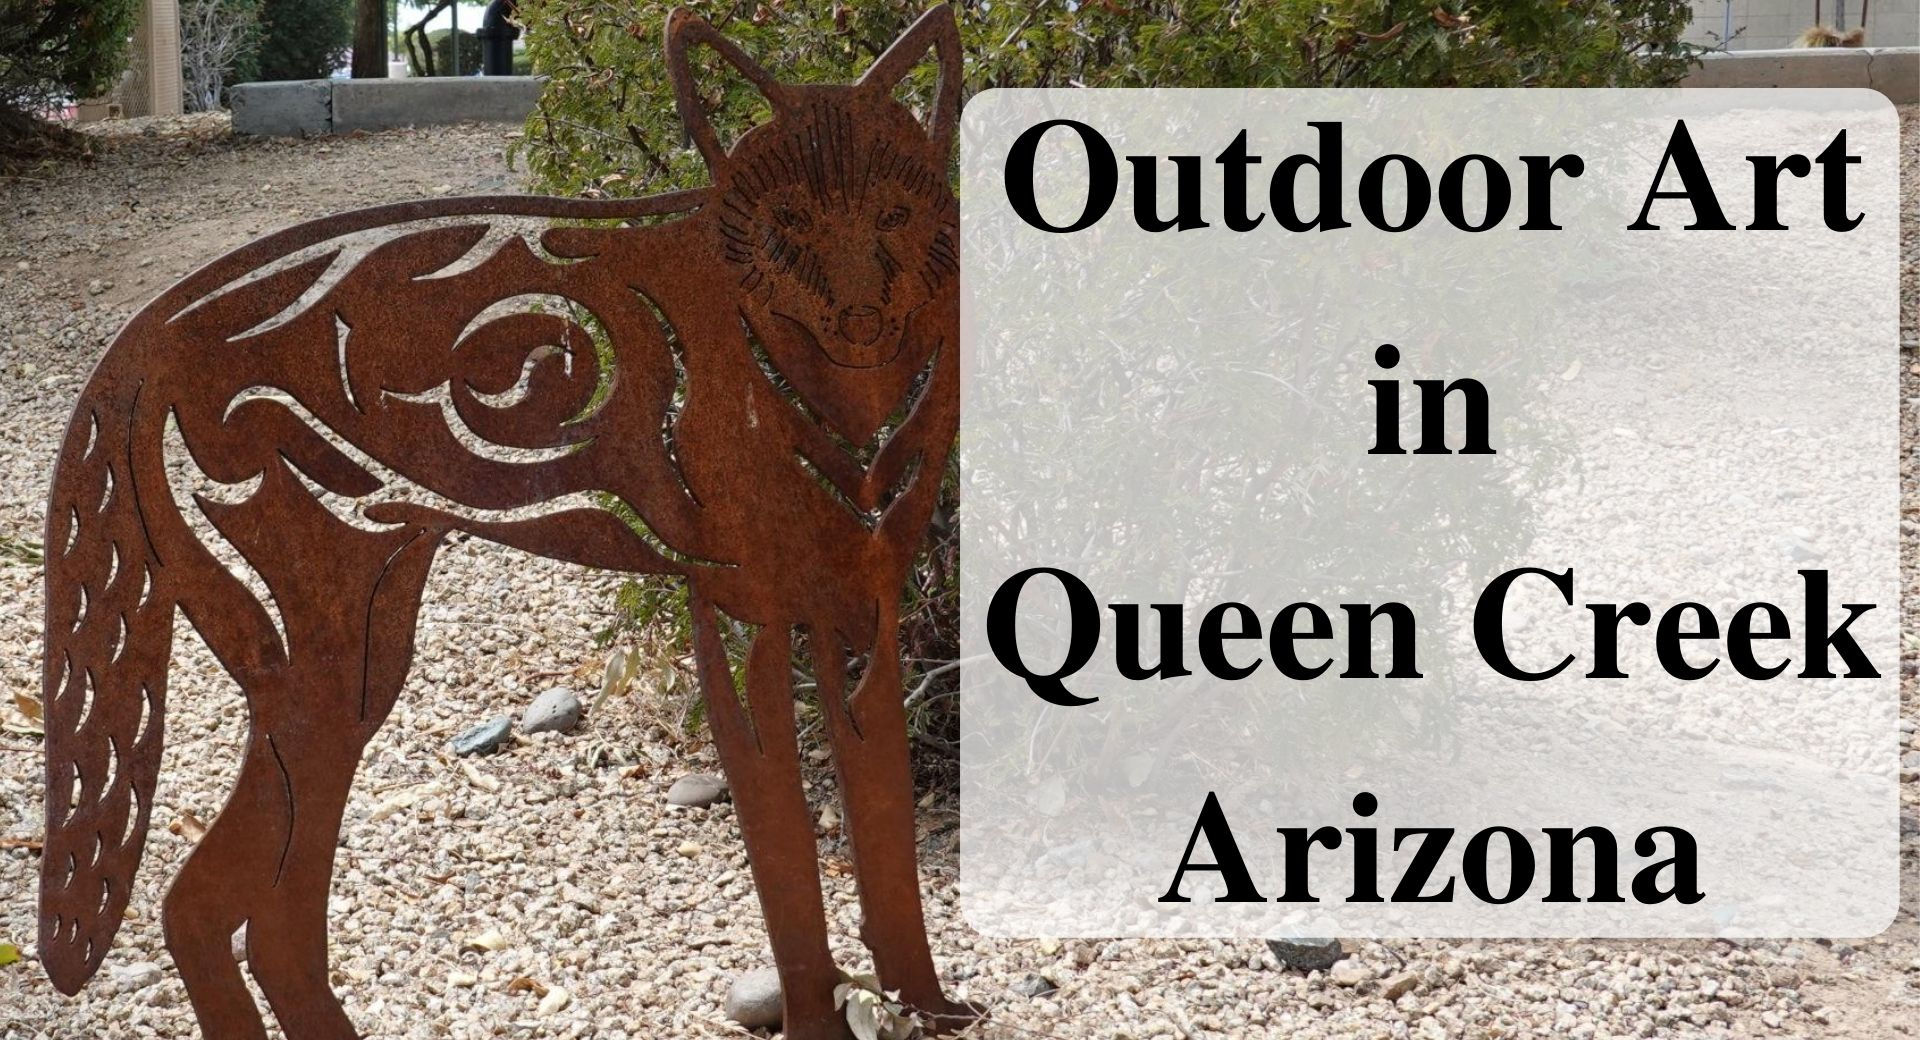 Outdoor Art in Queen Creek, Arizona Forever sabbatical